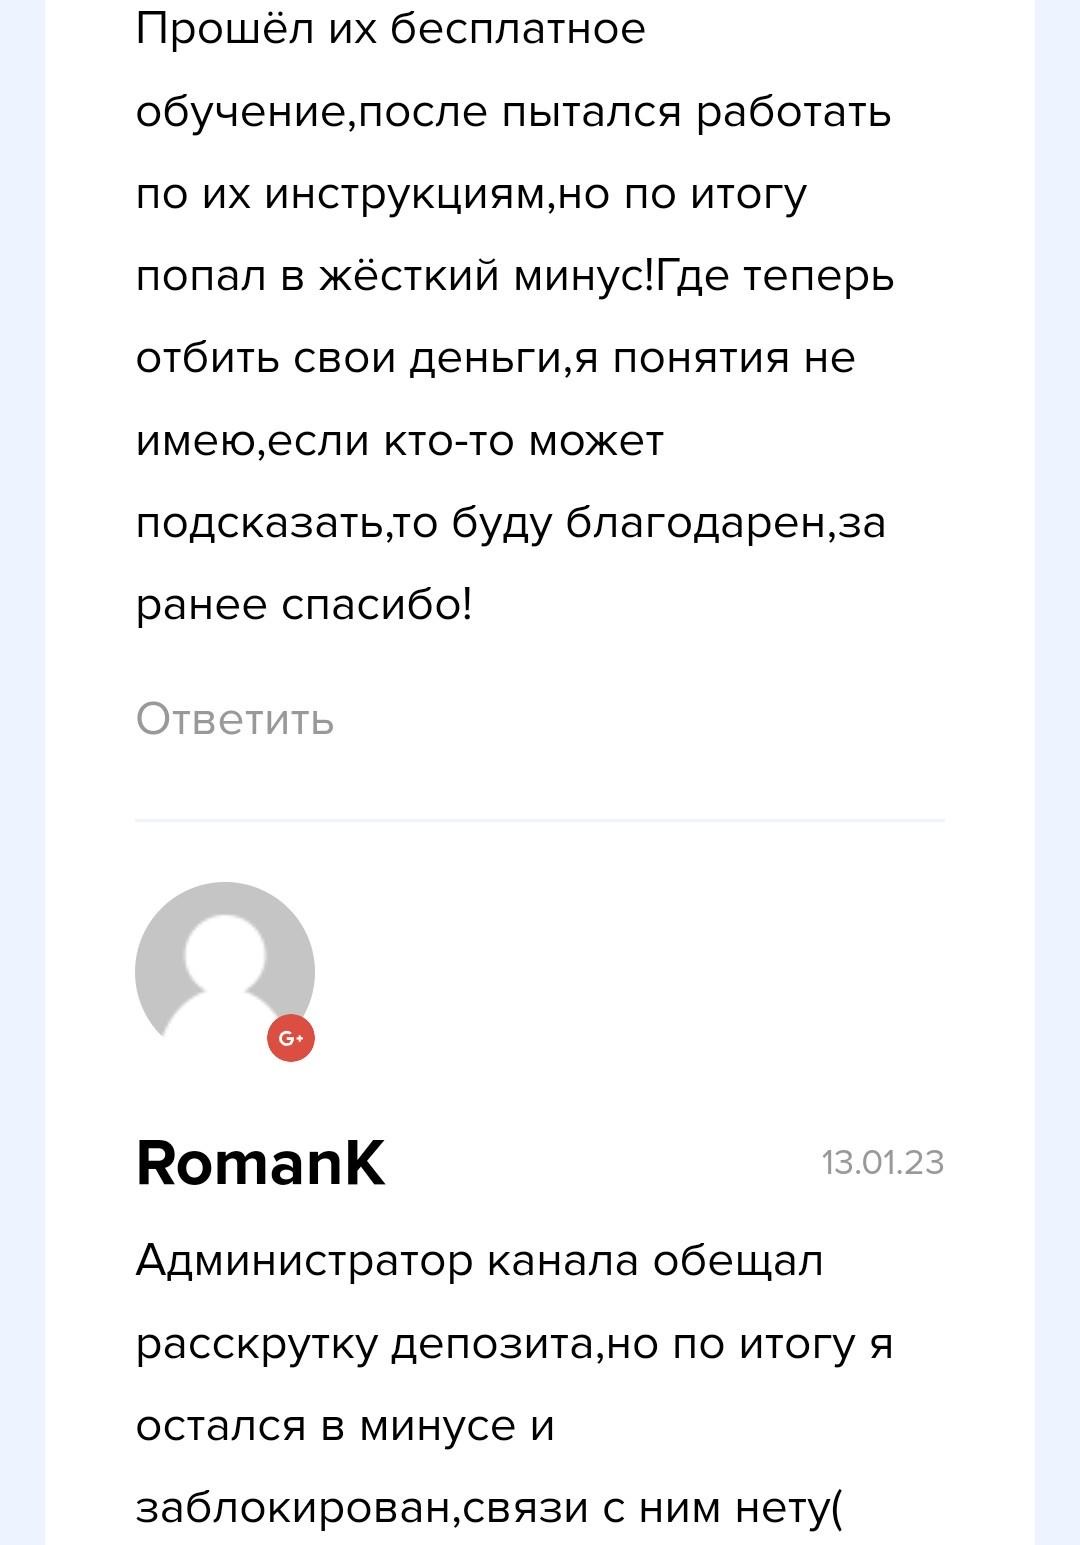 Отзывы о Poklonskay